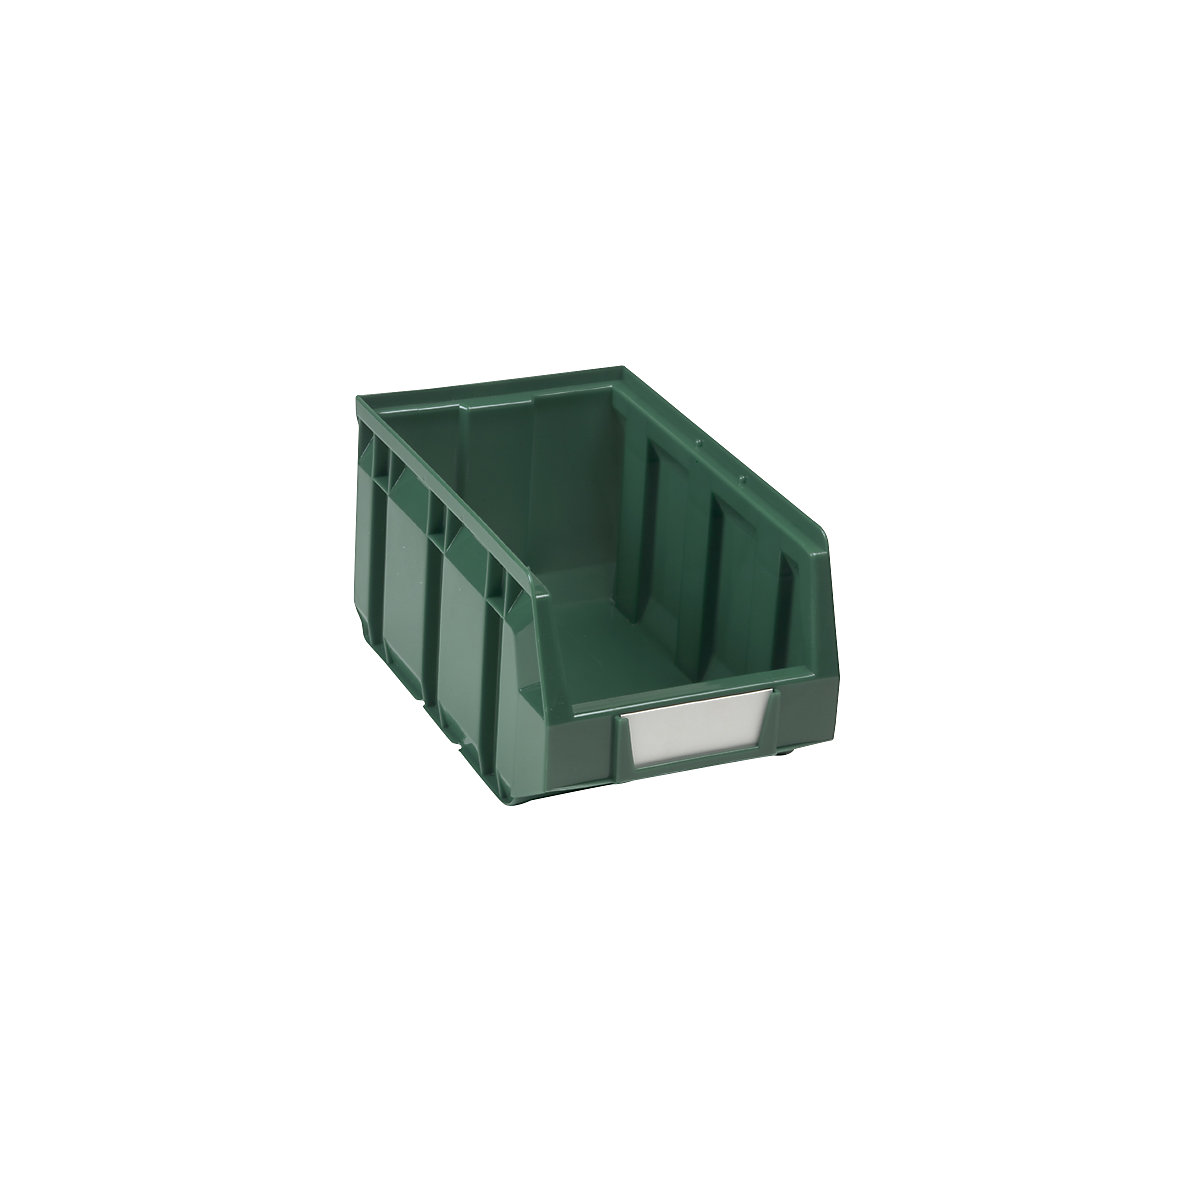 Otwarty pojemnik magazynowy z polietylenu, dł. x szer. x wys. 237 x 144 x 123 mm, zielony, opak. 38 szt.-11